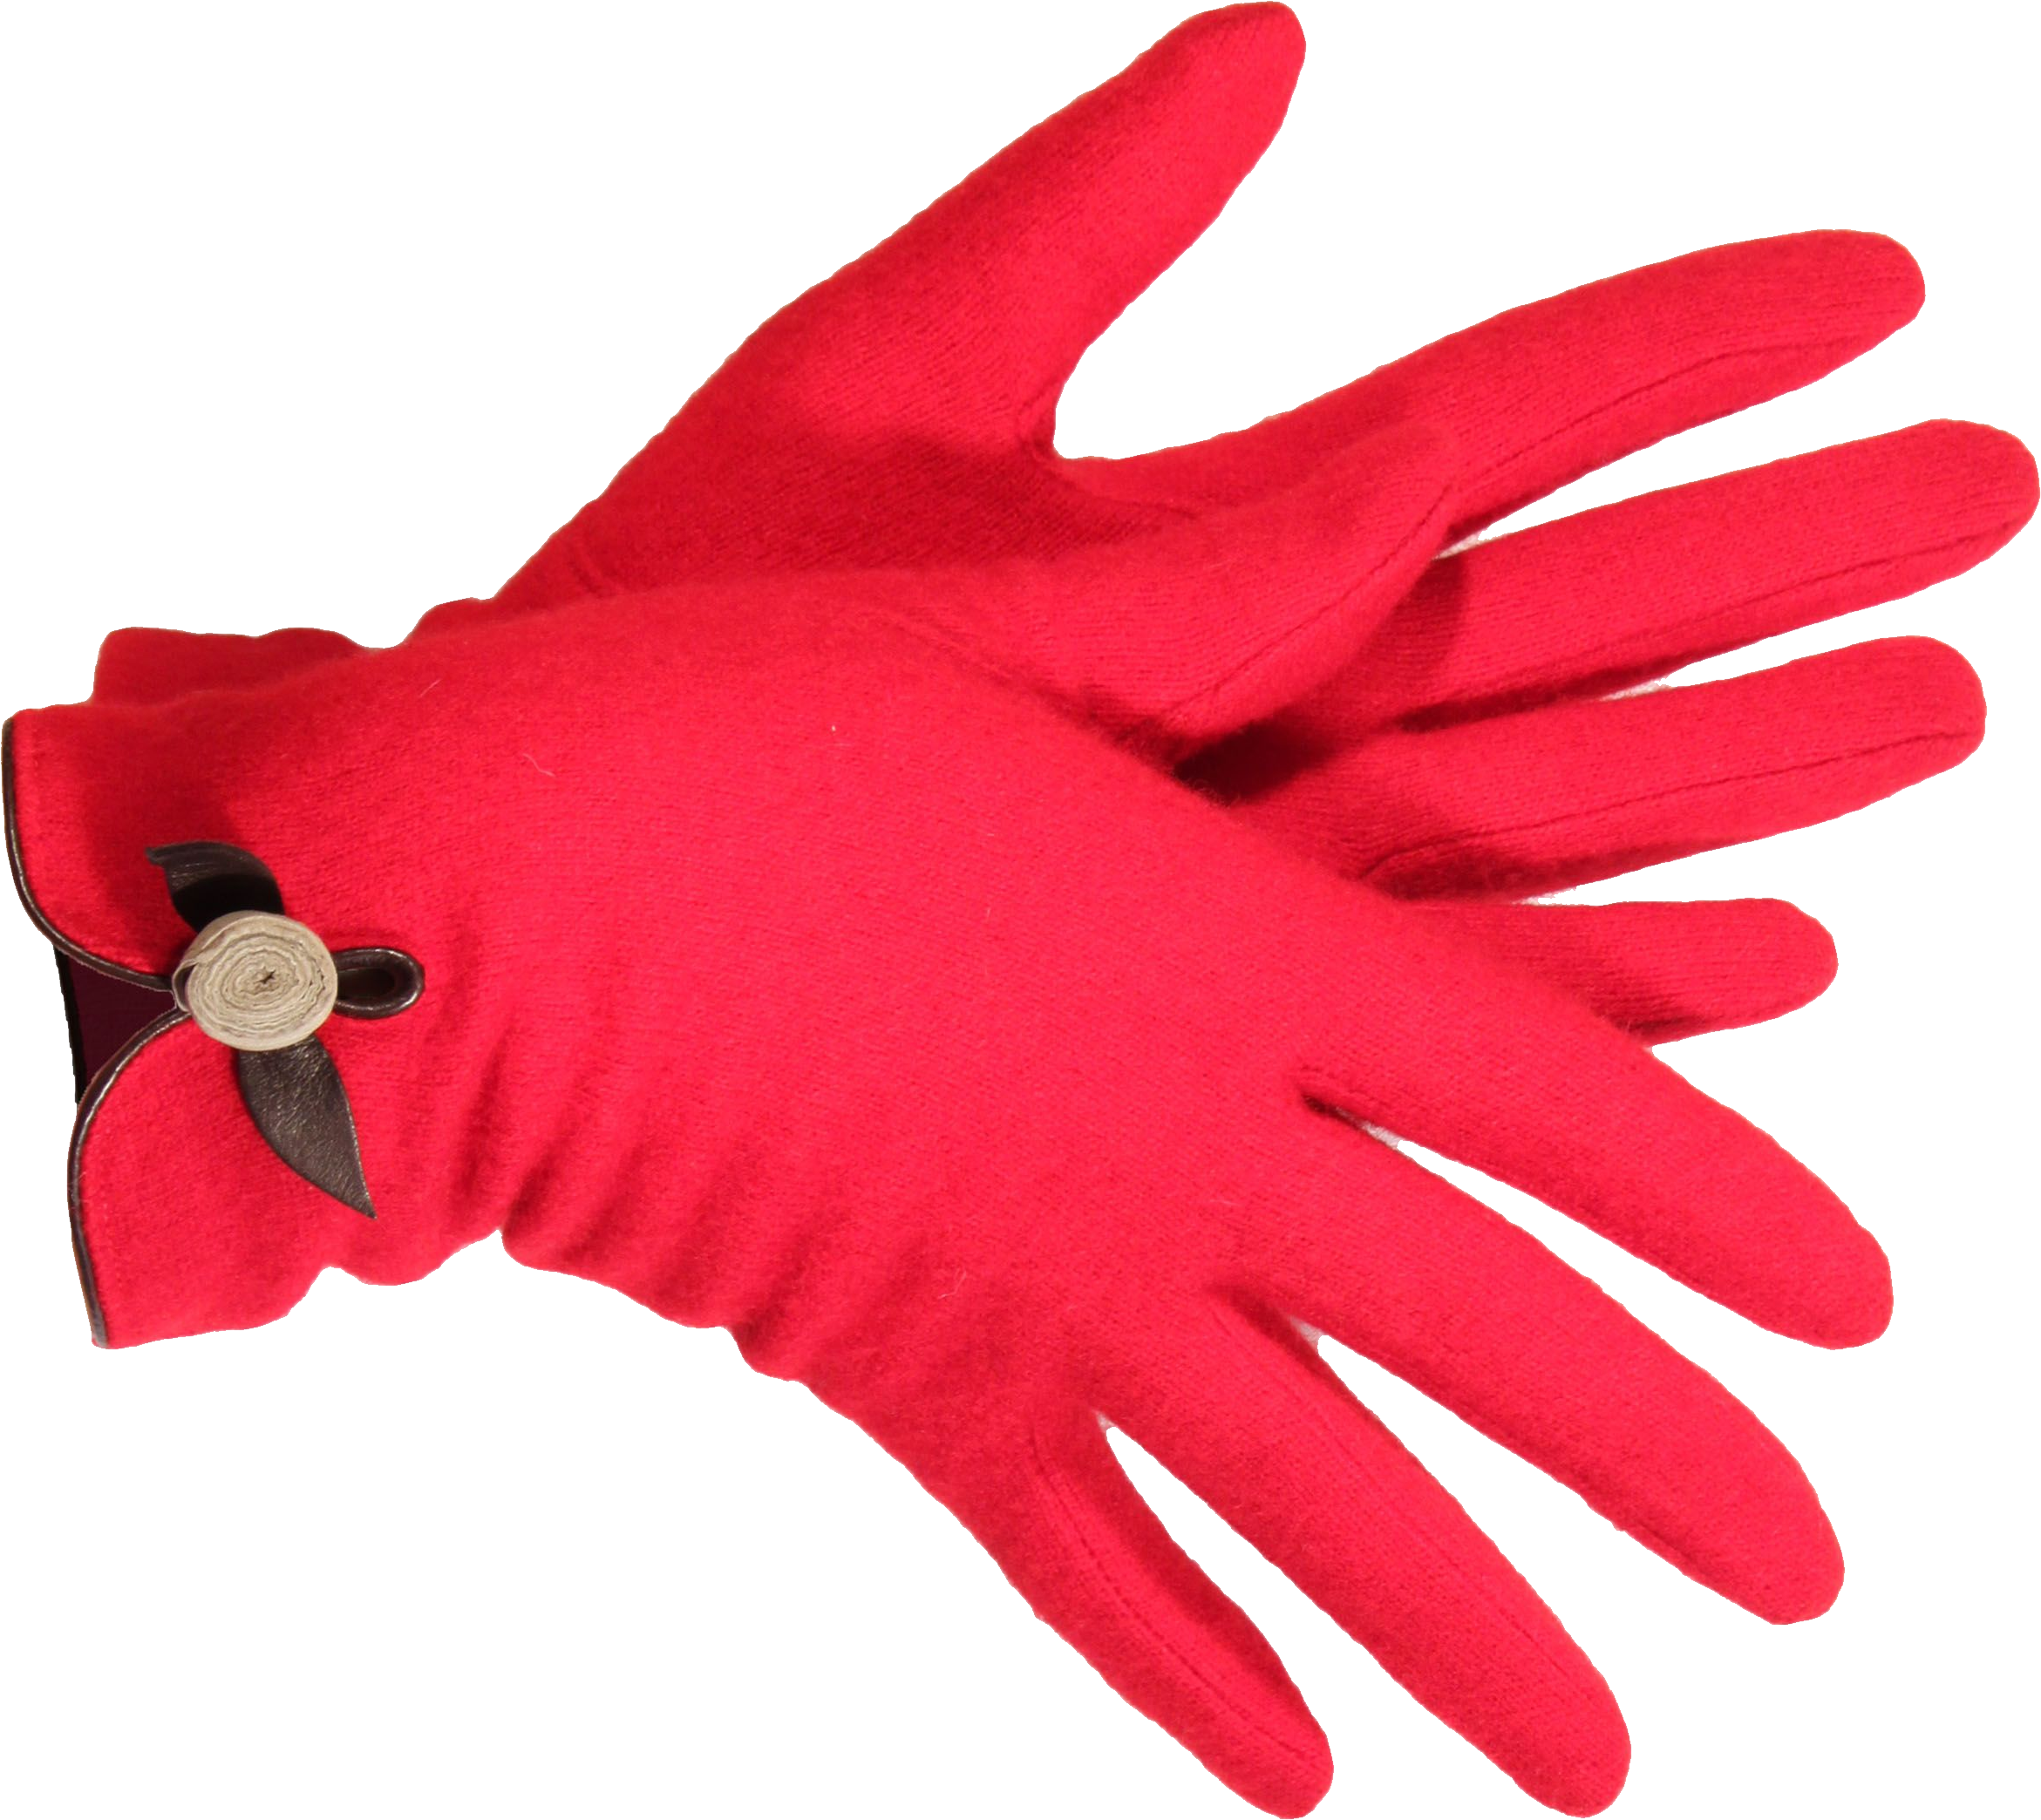 ピンクの手袋